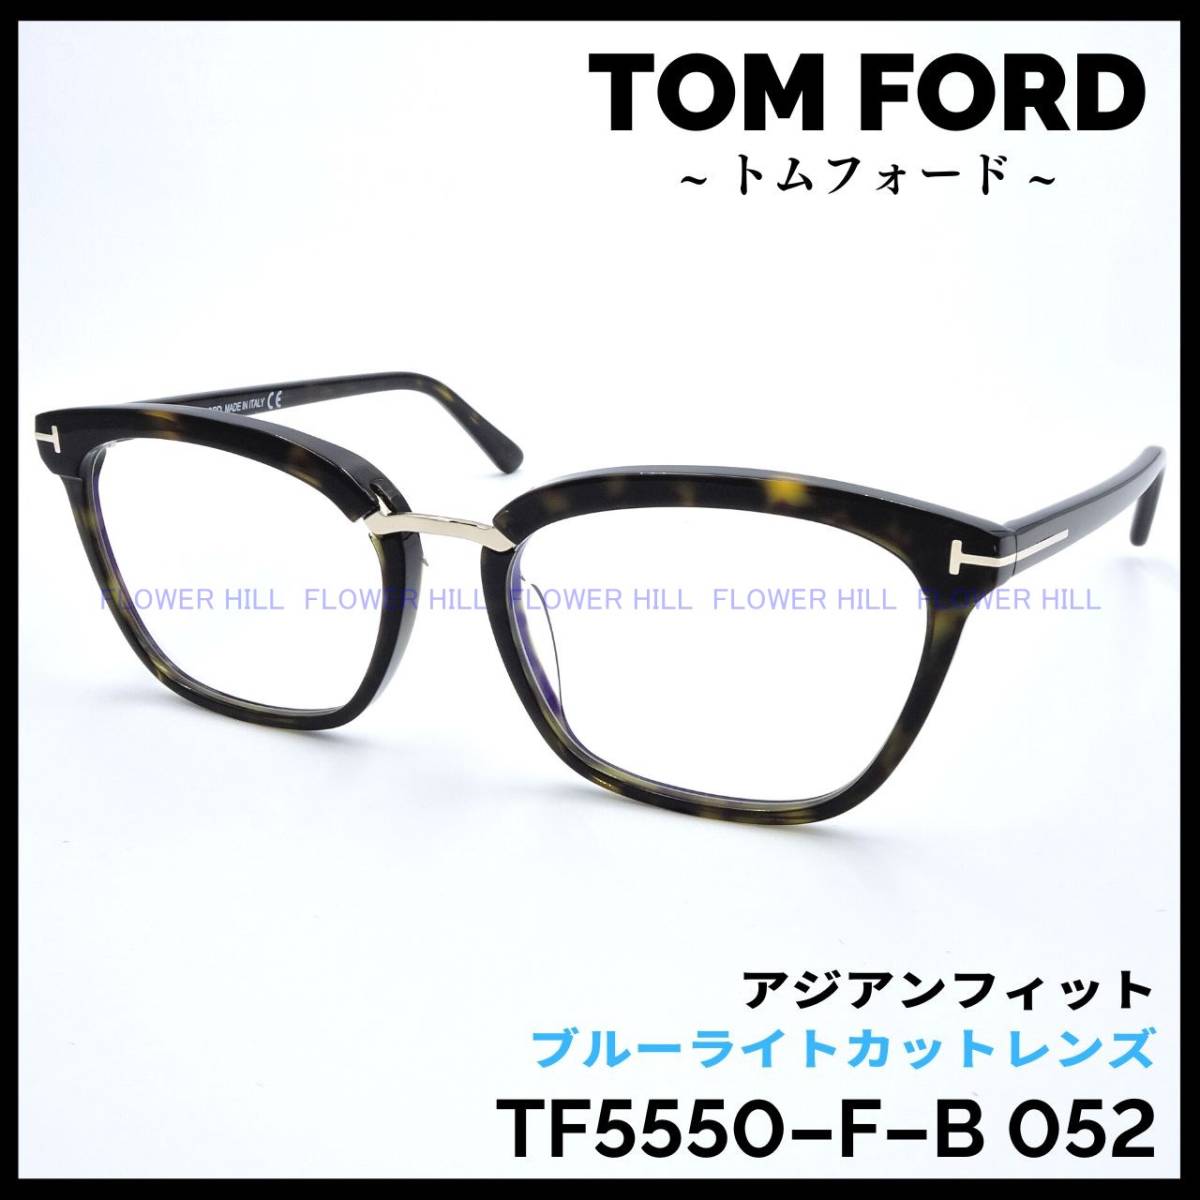 トムフォード TF5550-F-B 052 高級メガネ ハバナ アジアンフィット-